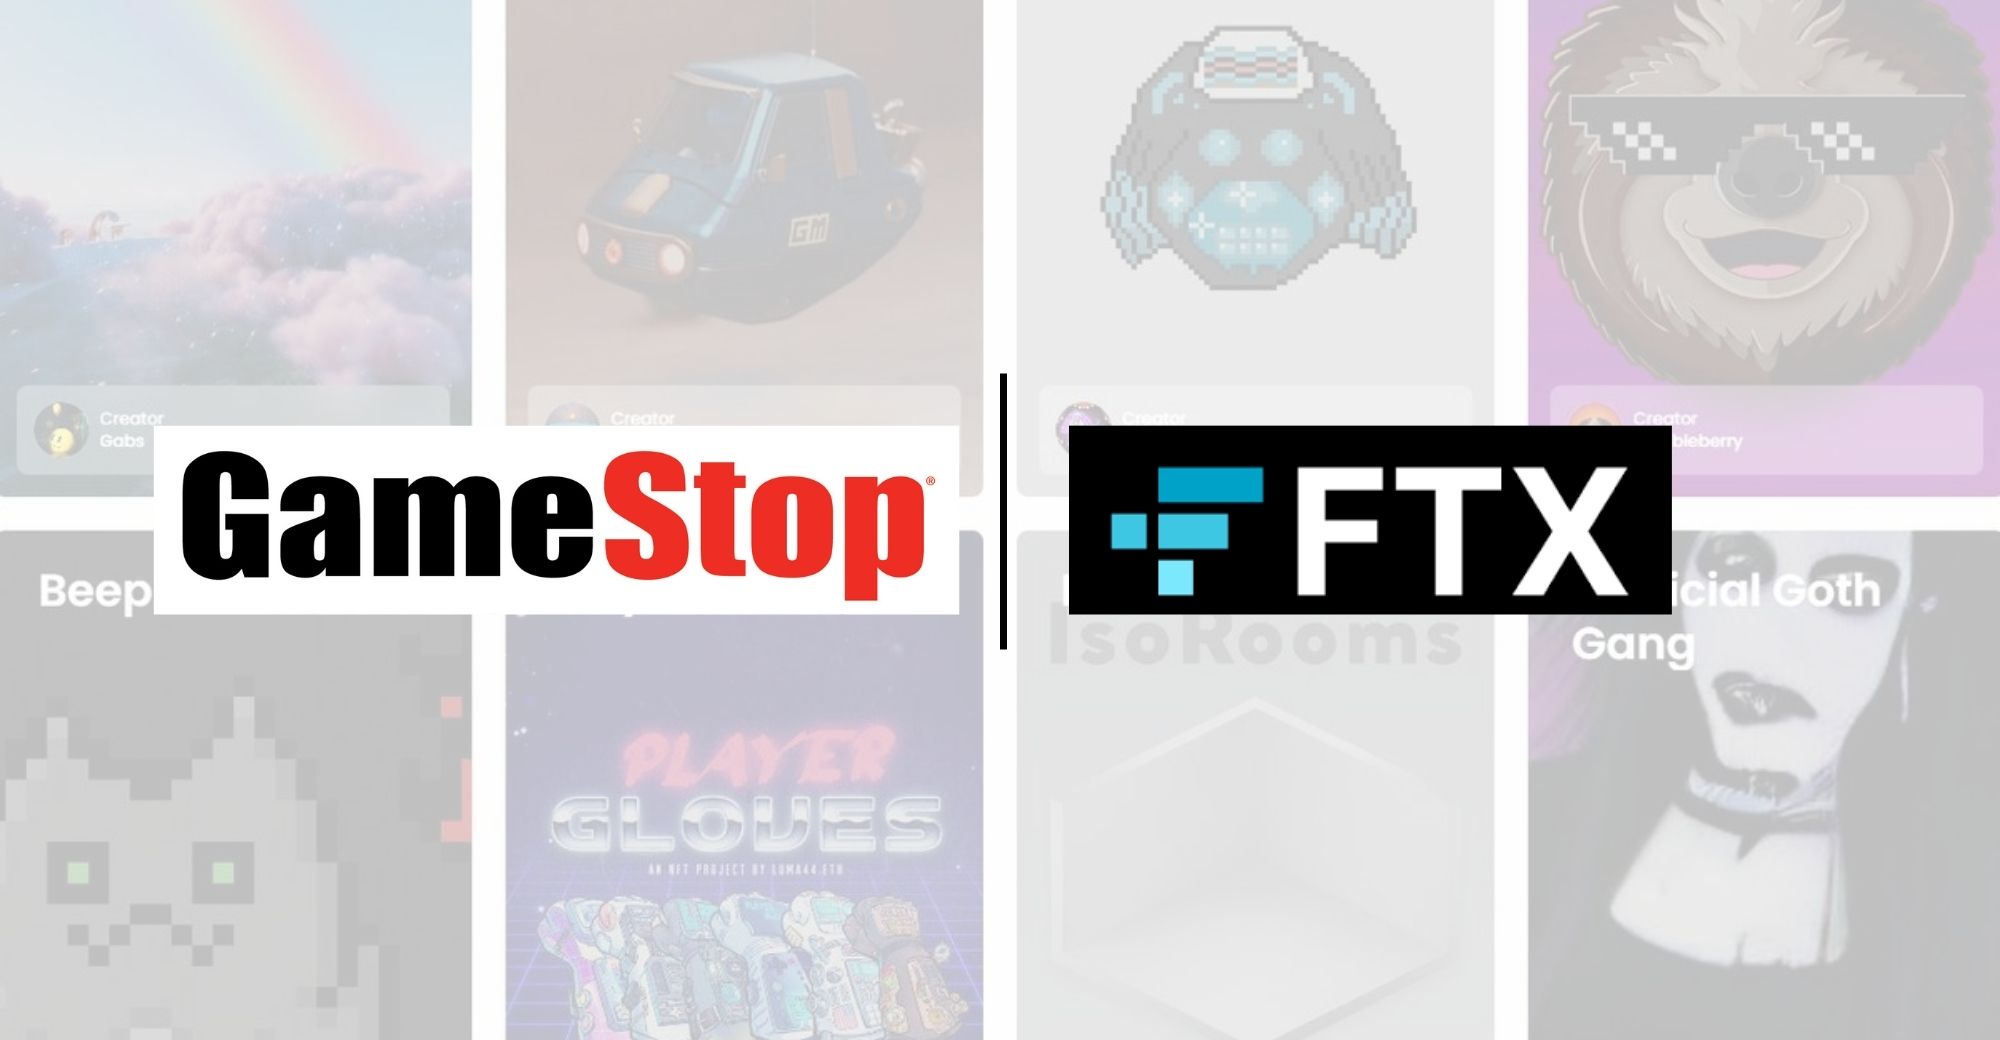 GameStop thiết lập quan hệ đối tác với FTX.US nhằm thúc đẩy việc áp dụng tài sản kỹ thuật số